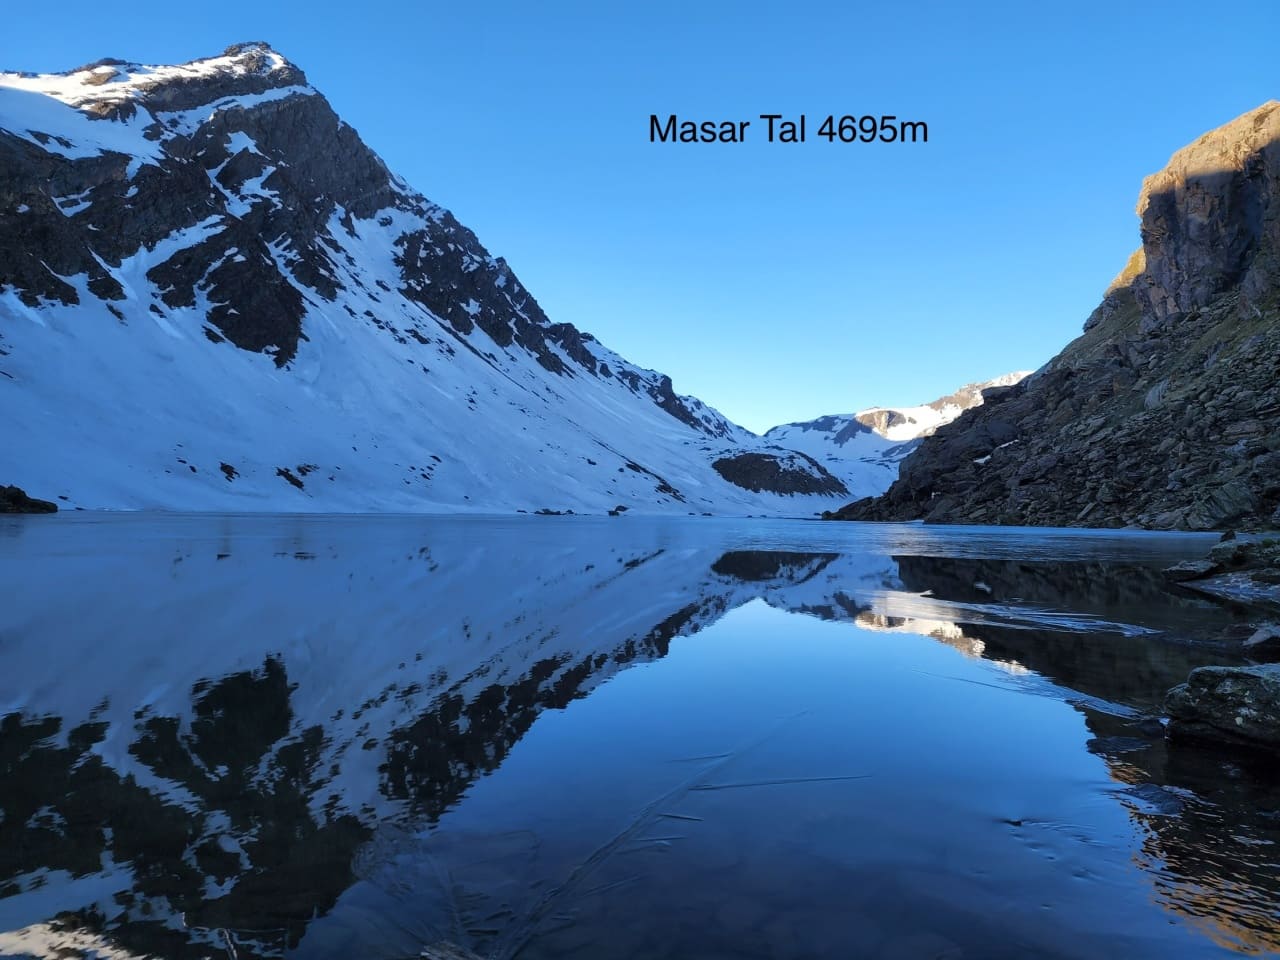 Masar Tal glacial lake